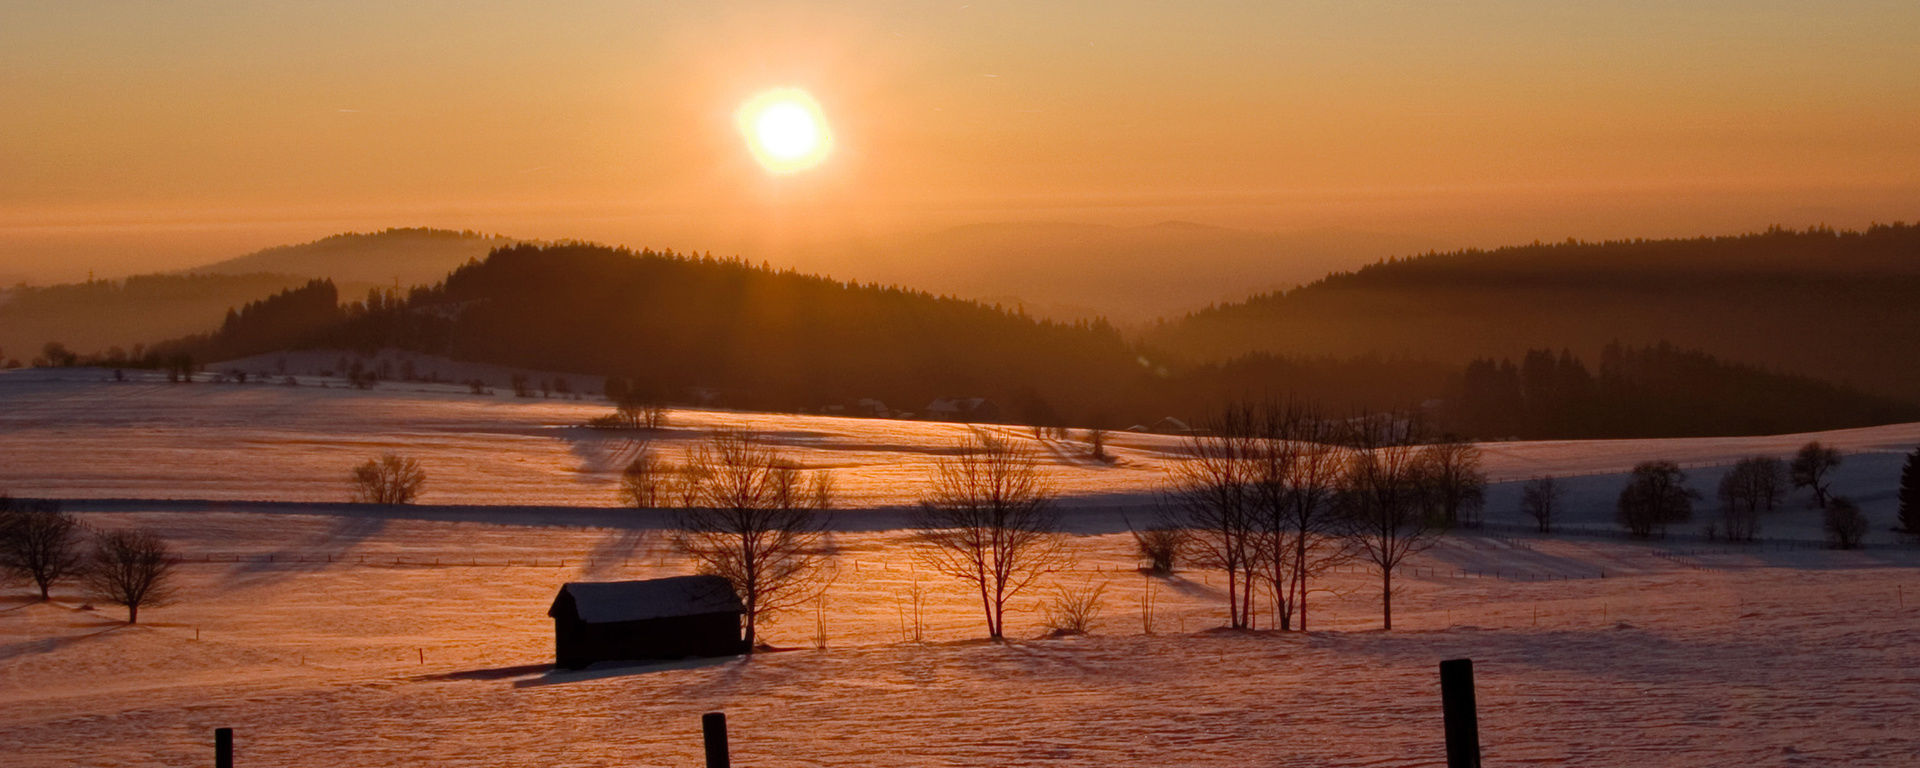 Schöne Aussicht auf die verschneite Winterlandschaft bei Sonnenuntergang